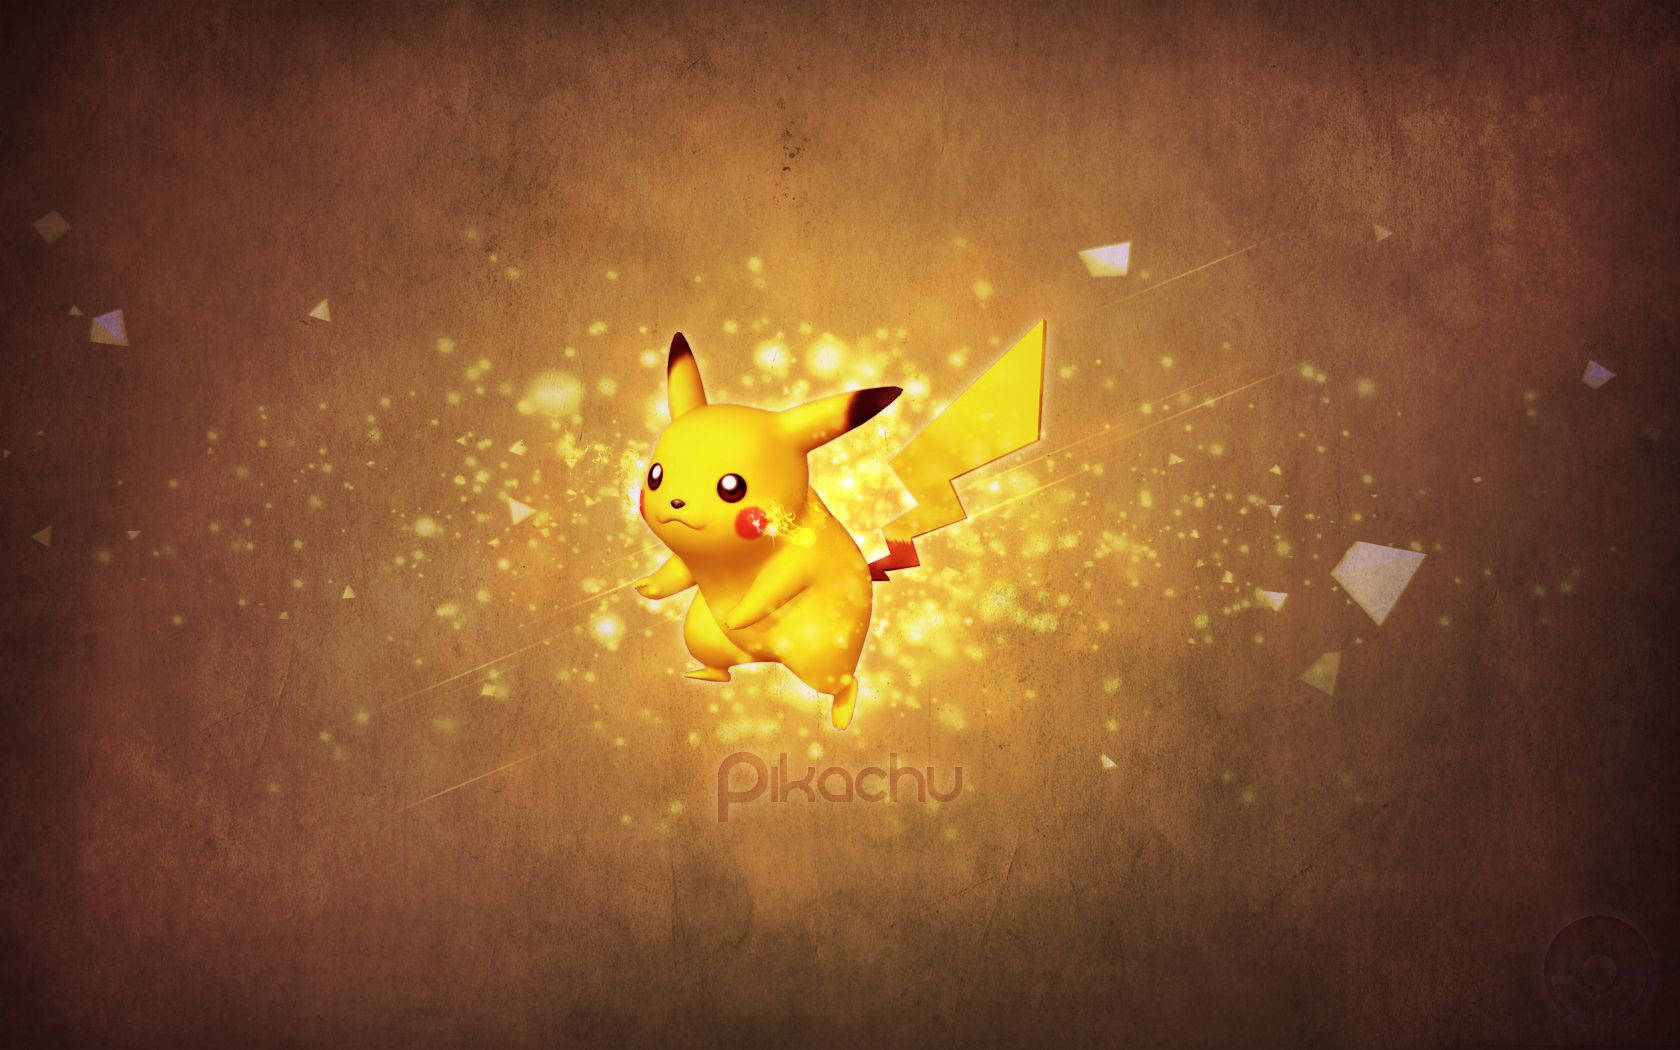 Pikachu 3d Starter Pokémon Background